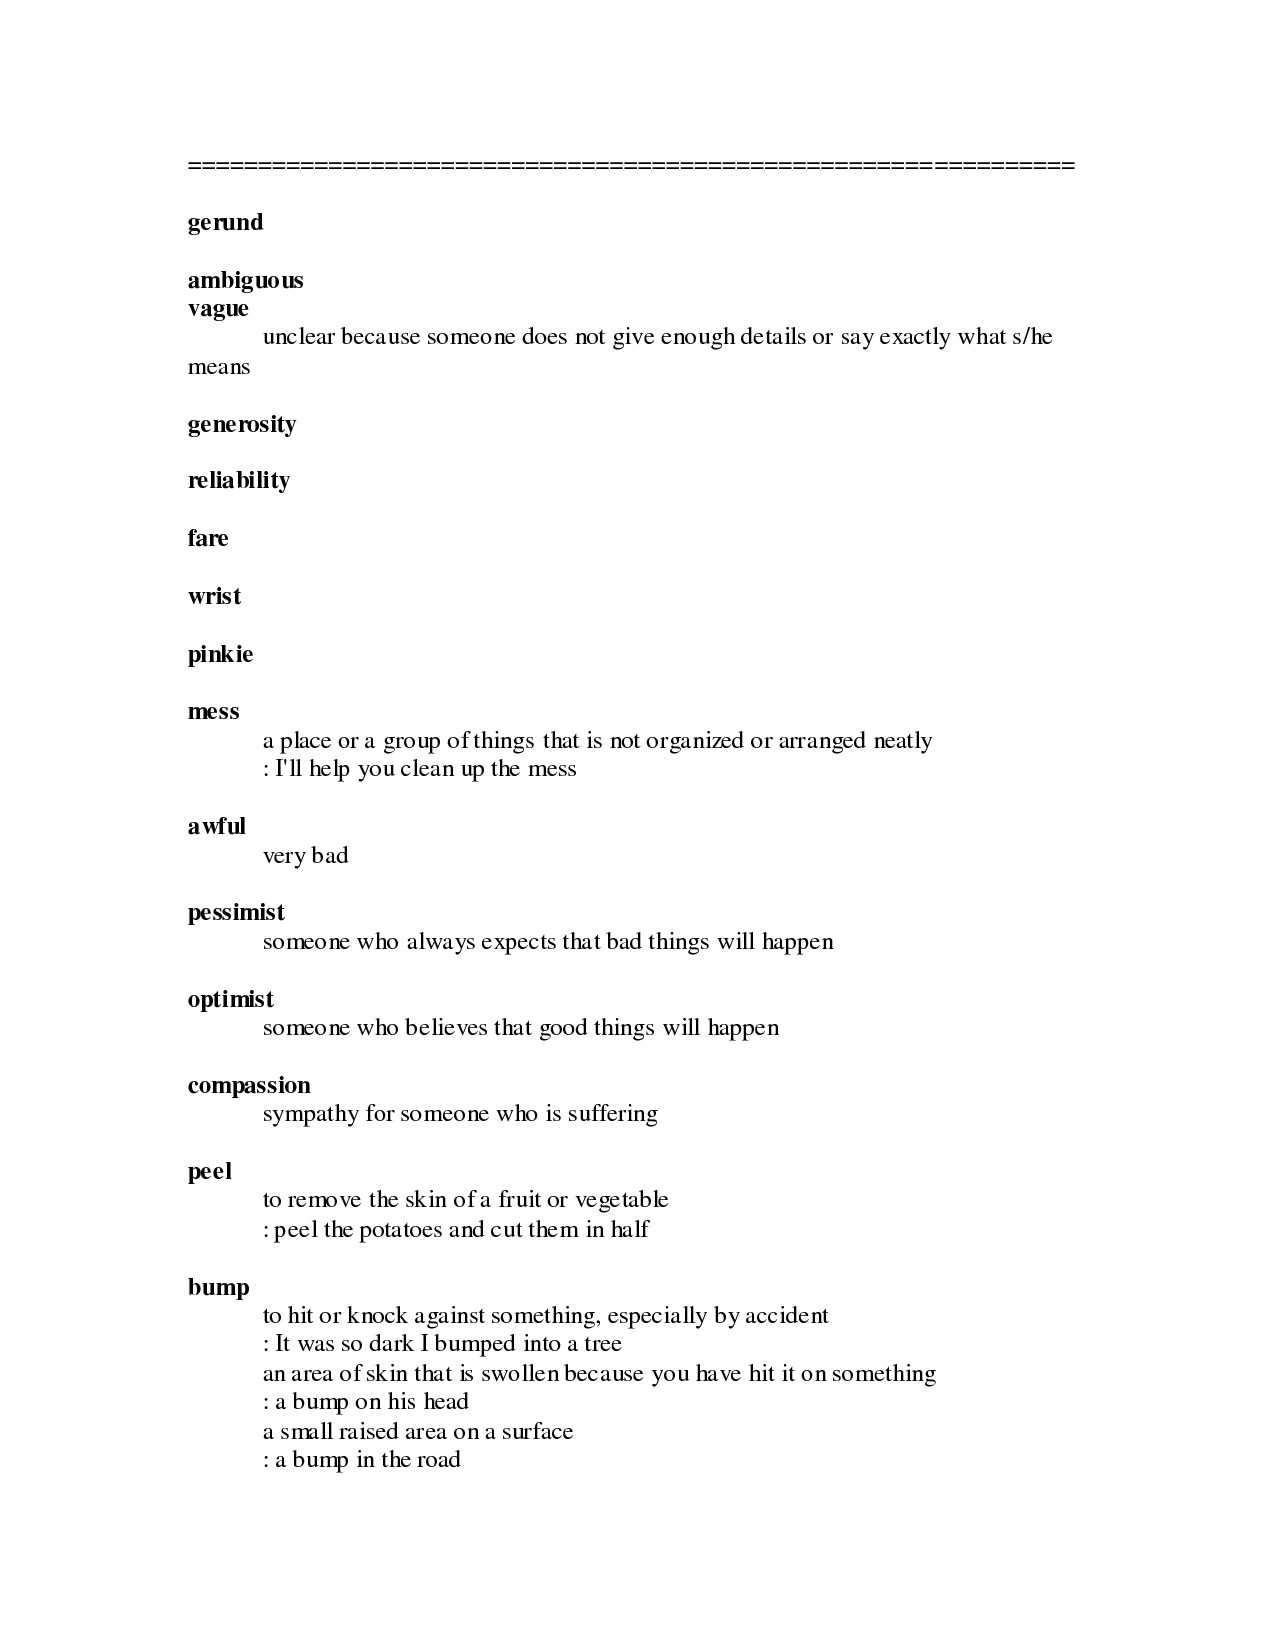 16-best-images-of-gerund-phrases-worksheets-gerund-and-participle-phrase-worksheet-gerund